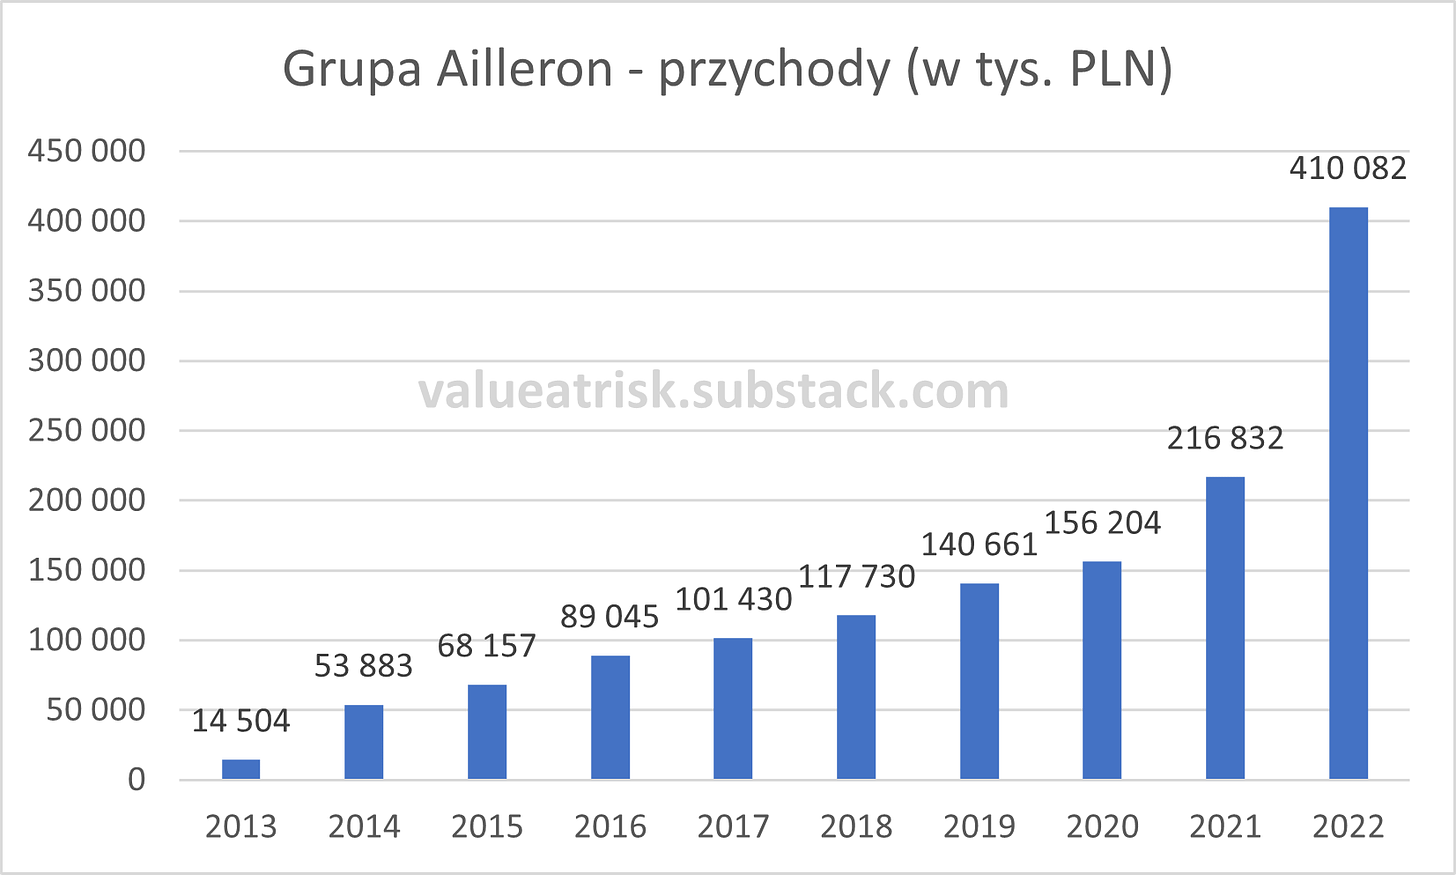 Grupa Ailleron Przychody w latach 2013-2022